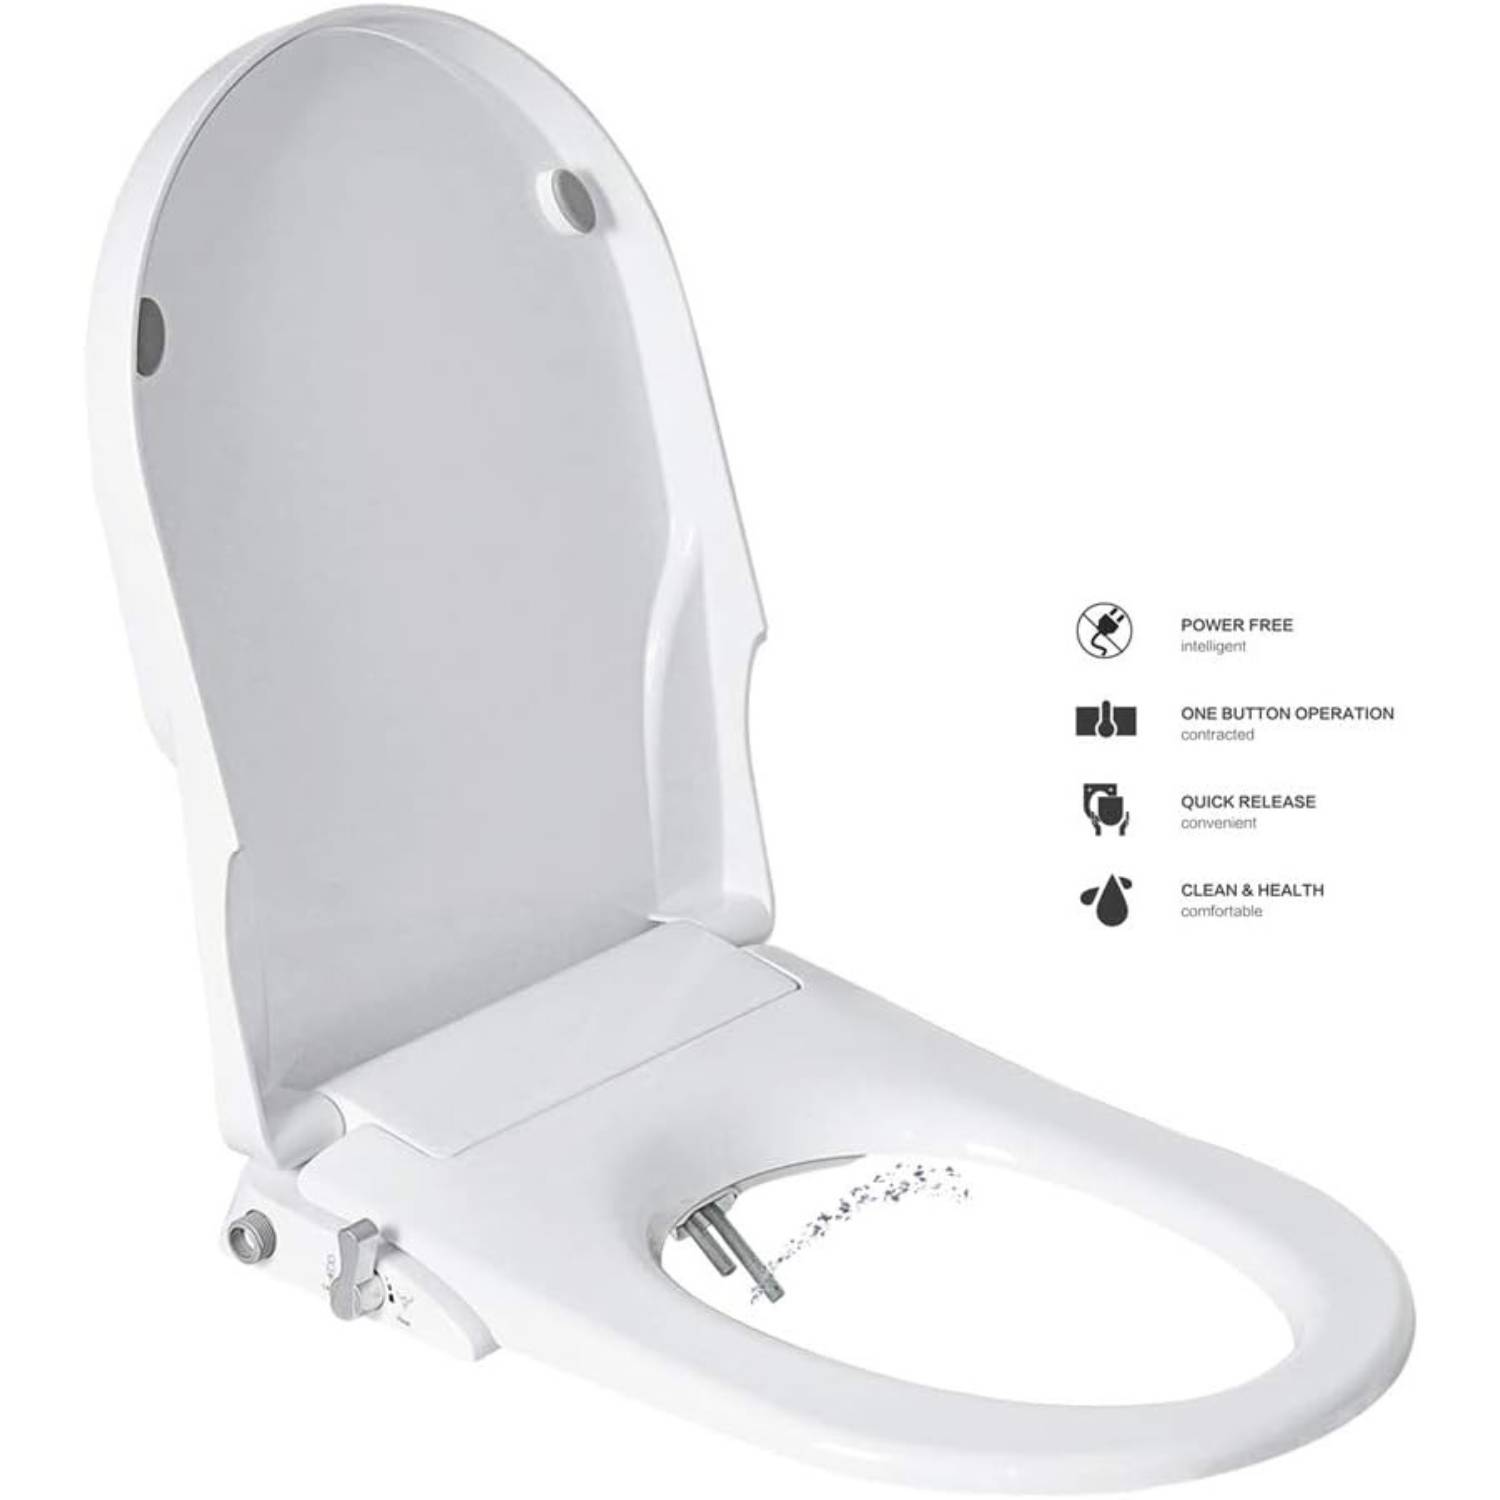 buy D shape bidet seat attachment